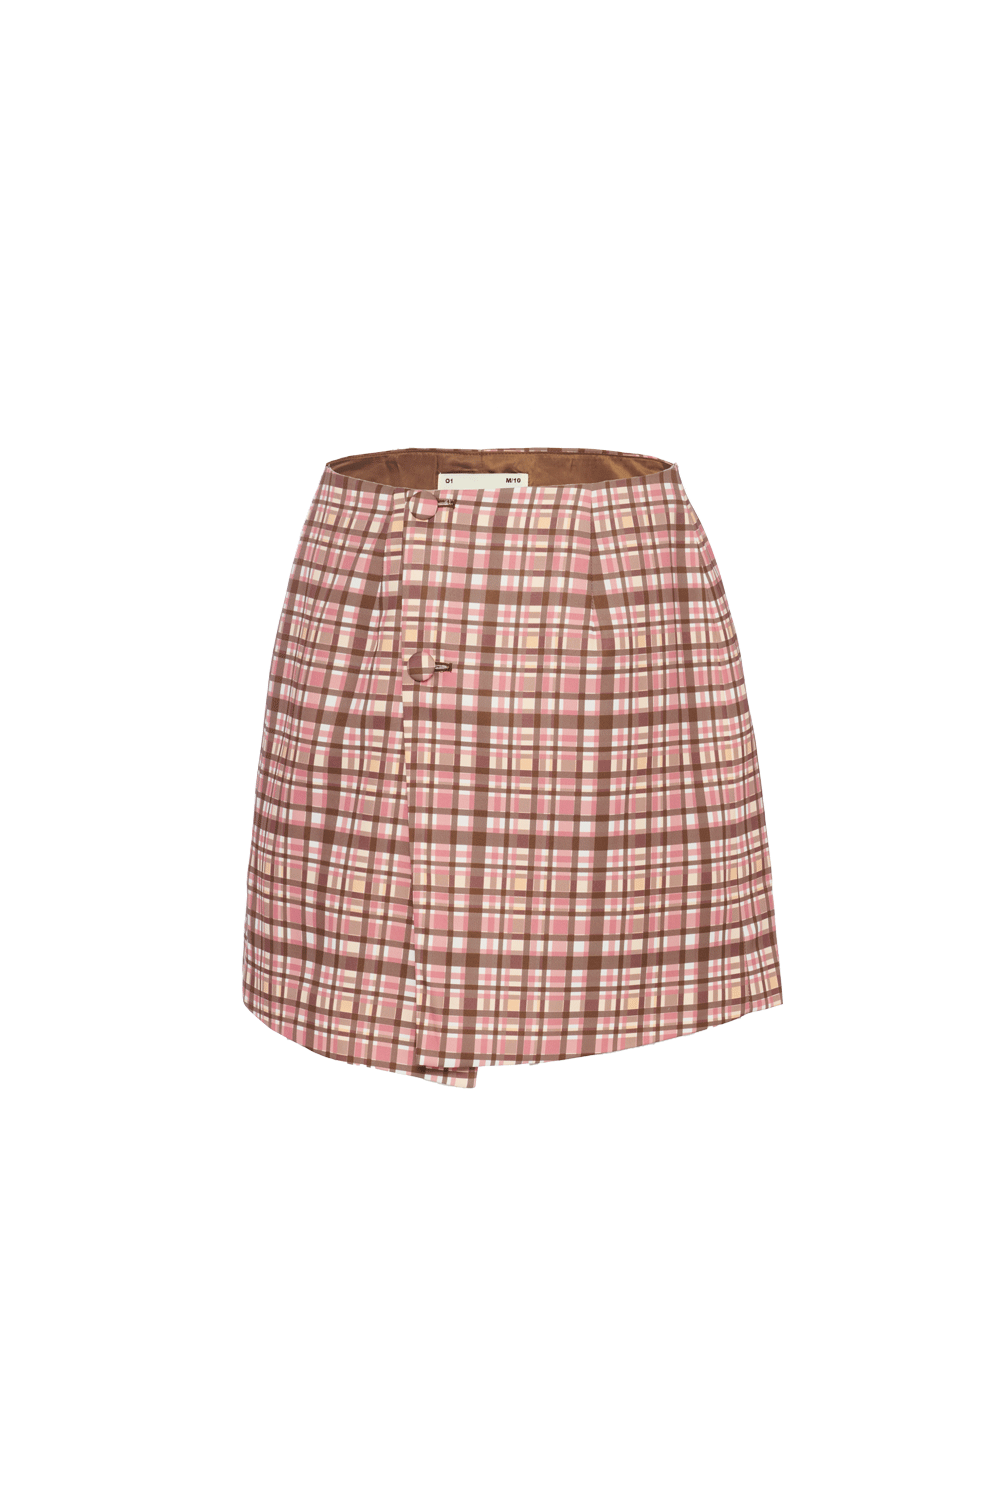 003 Skirt